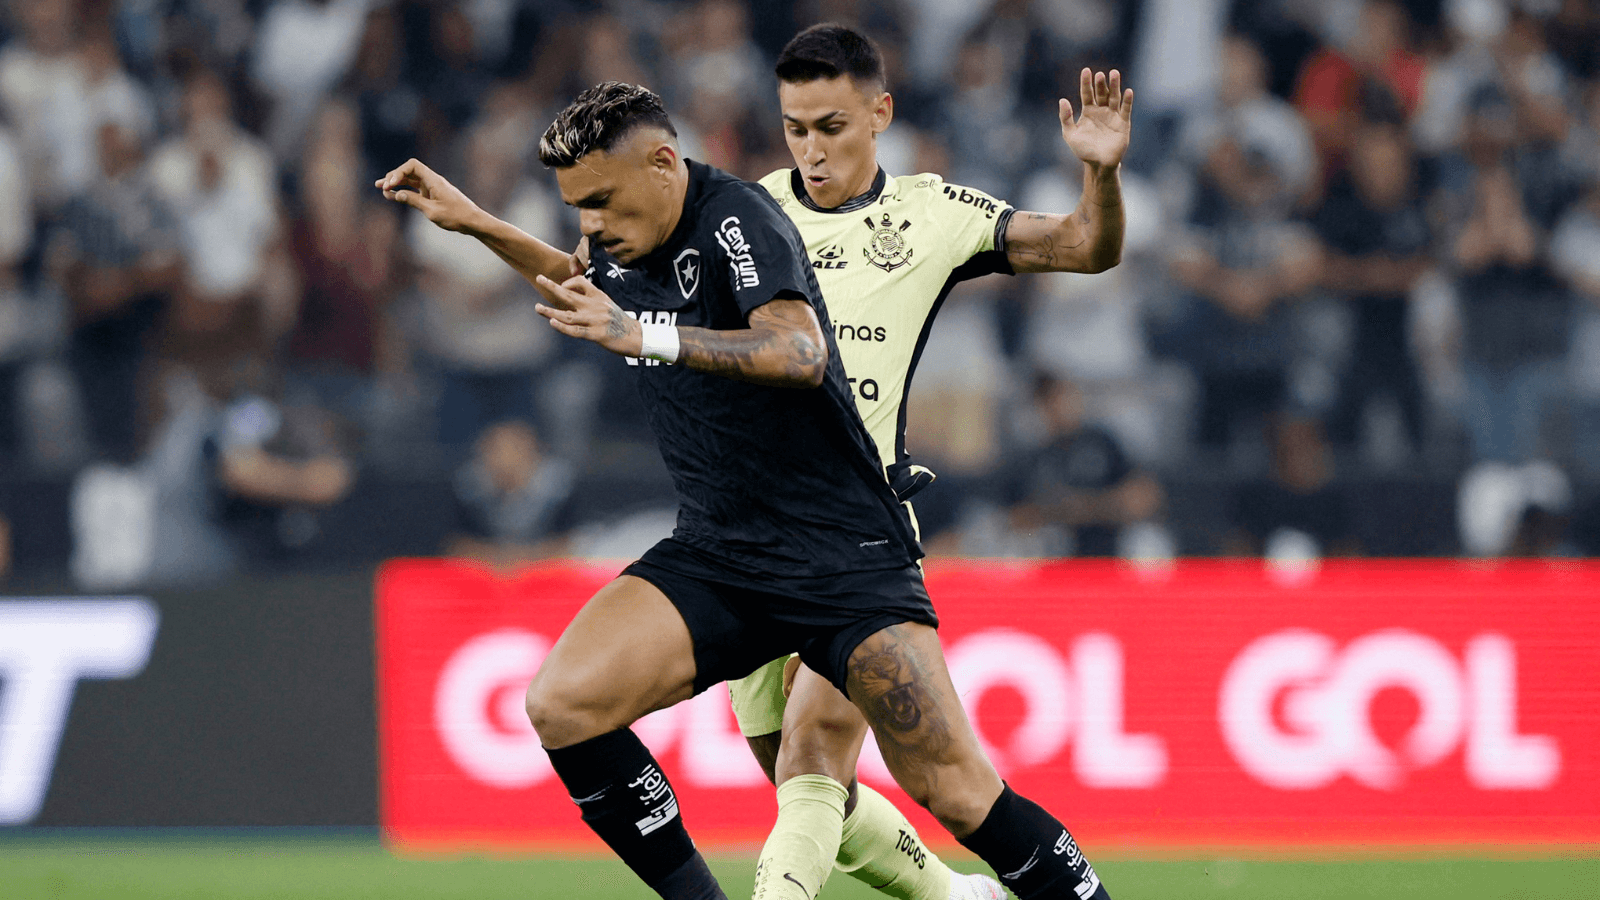 Wesley entra na segunda etapa e soma bons números em empate do Corinthians  com o Grêmio; confira